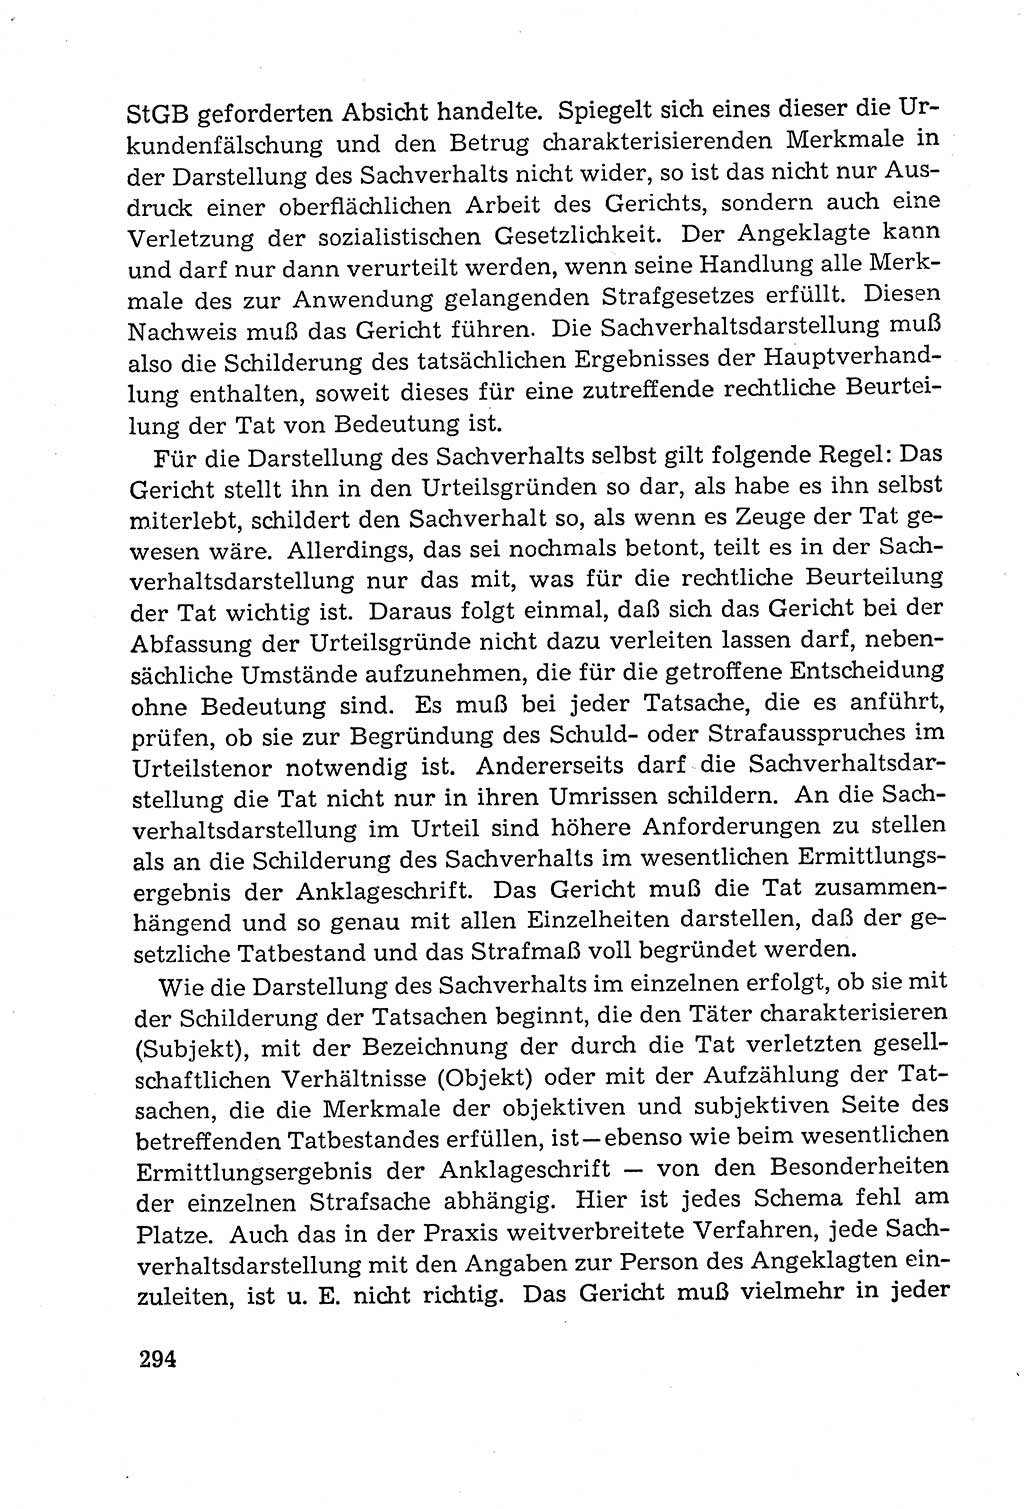 Leitfaden des Strafprozeßrechts der Deutschen Demokratischen Republik (DDR) 1959, Seite 294 (LF StPR DDR 1959, S. 294)